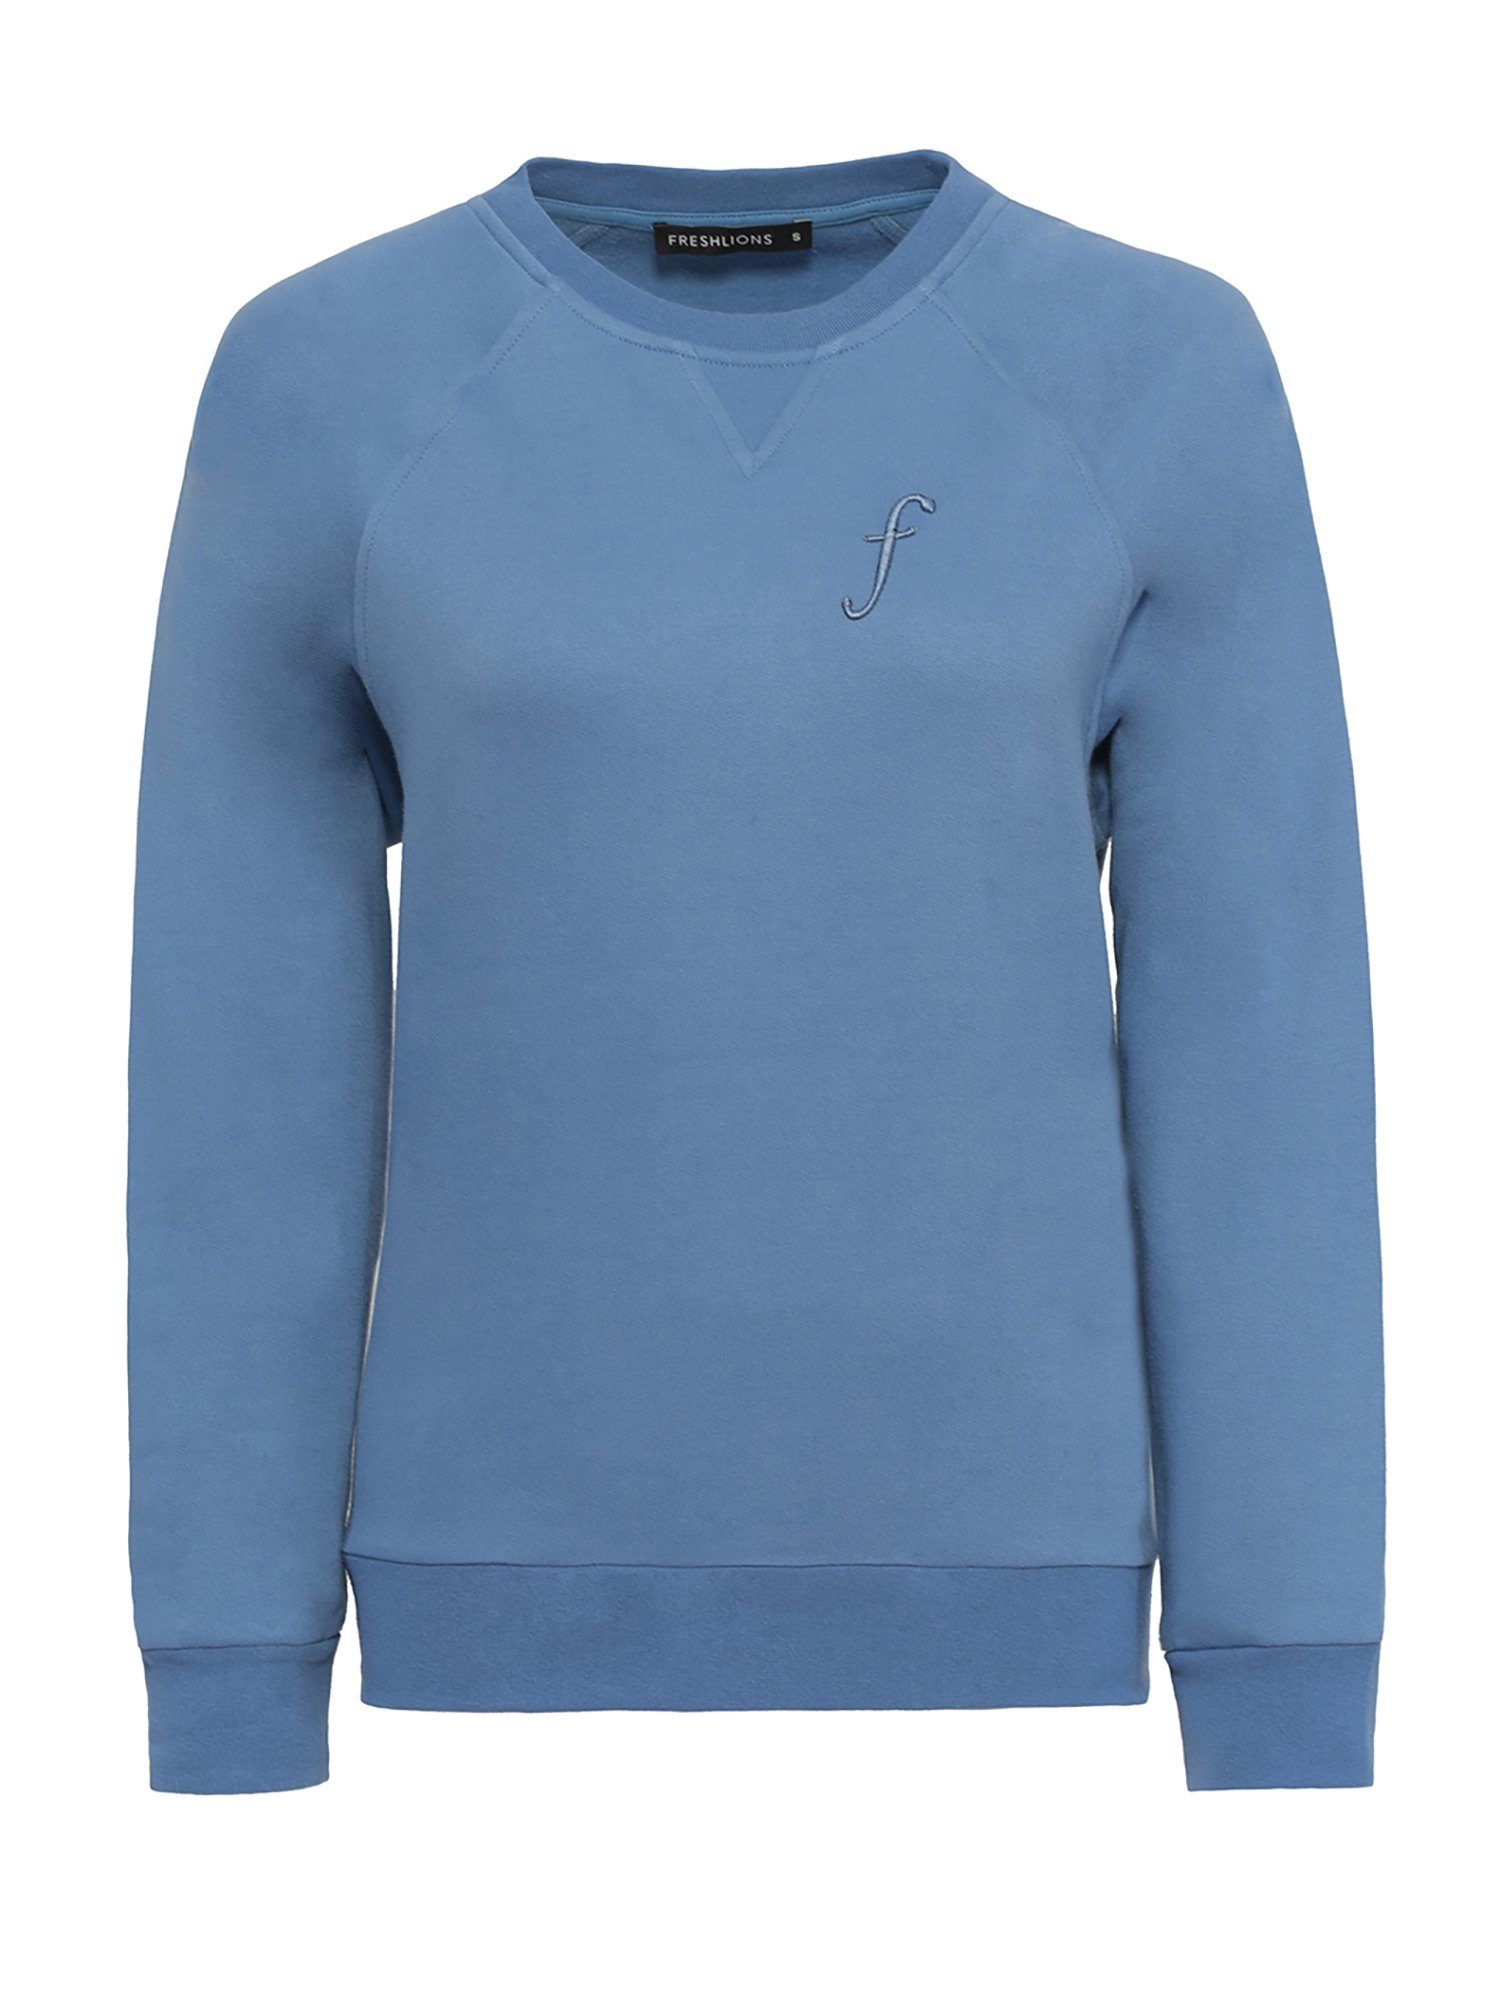 Freshlions Kurzweste Sweatshirt blau F Embroidery Freshlions